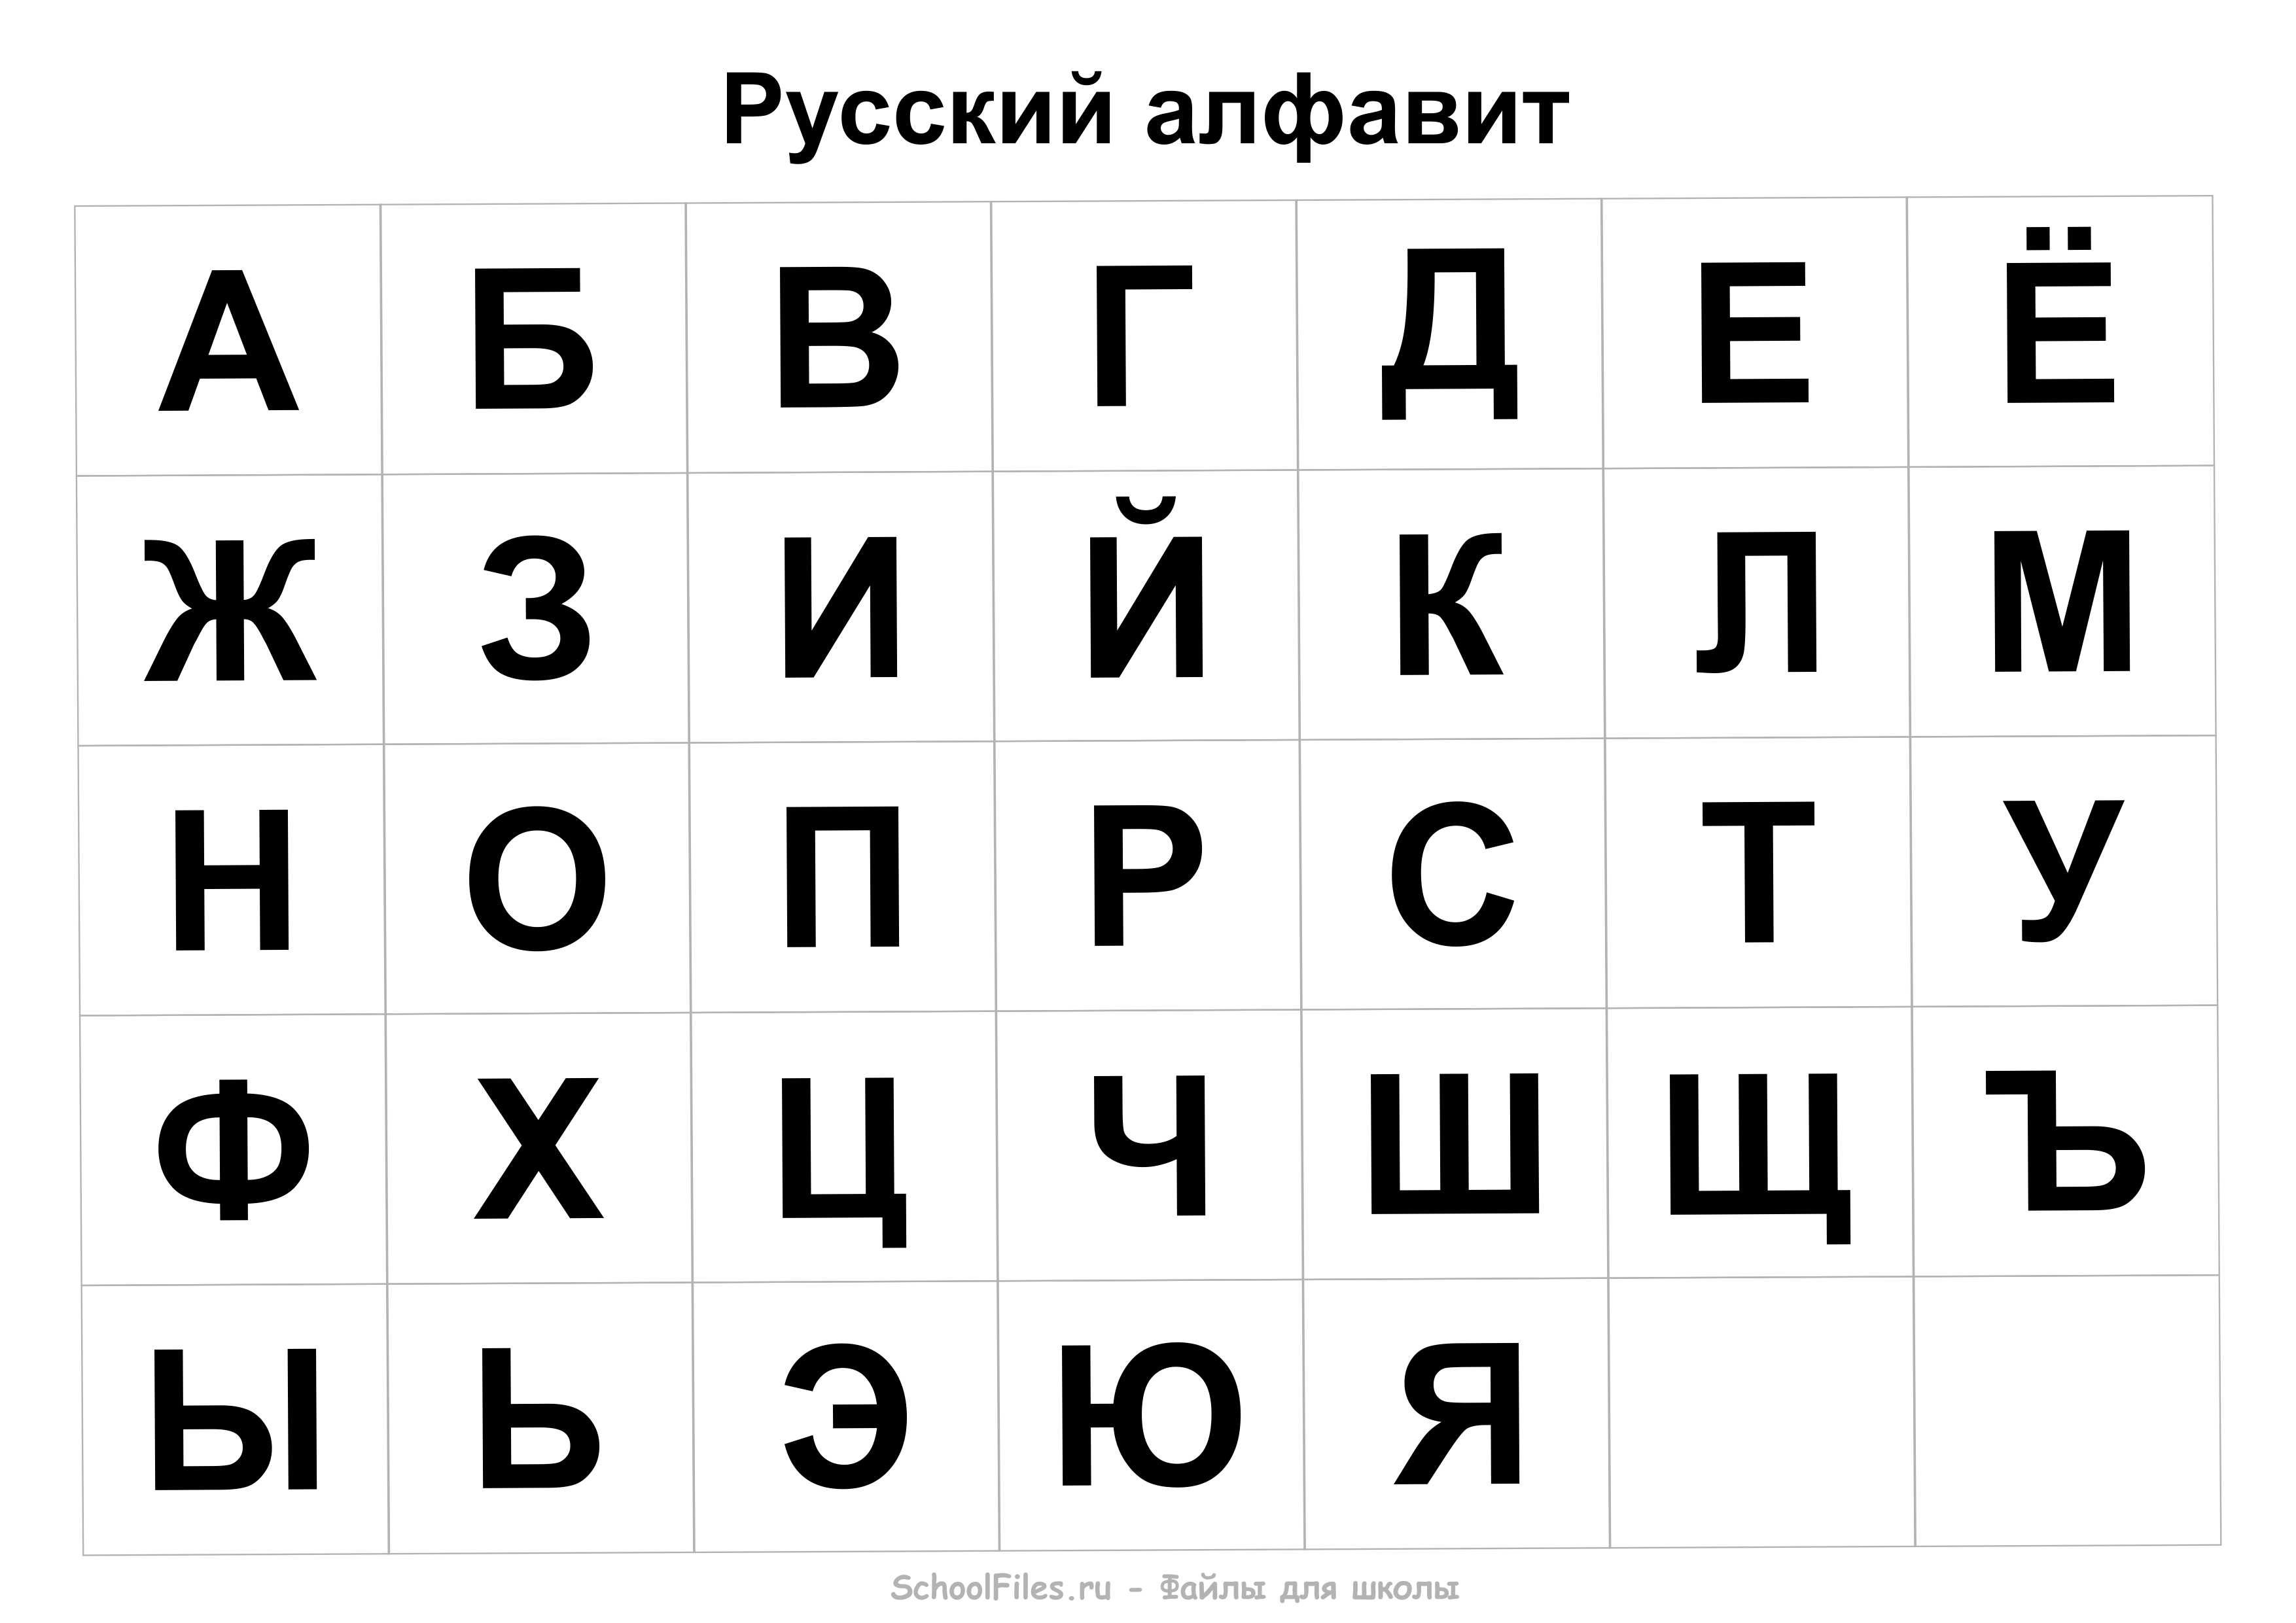 Алфавит русский для школьников и дошкольников - Файлы для школы.